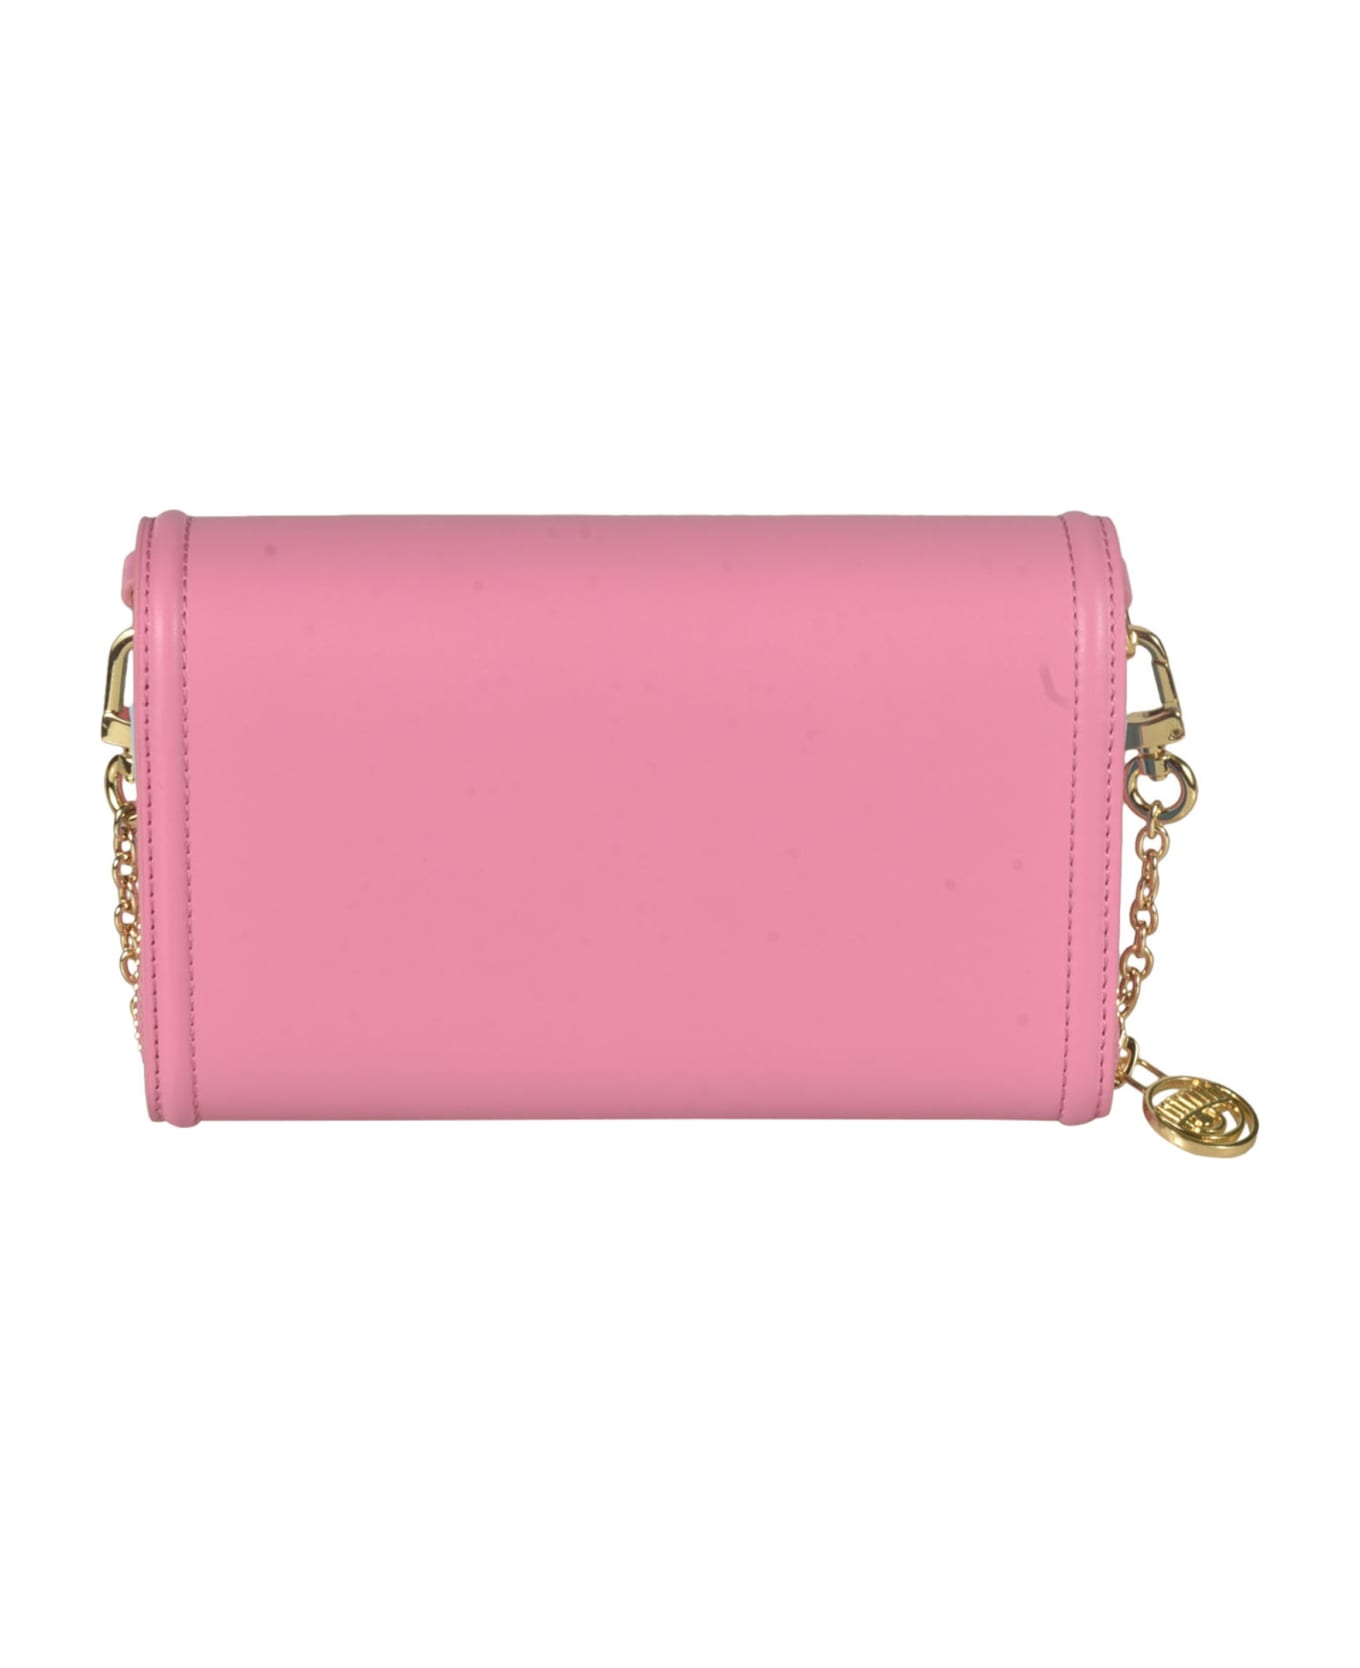 Chiara Ferragni Range A Eyelike Shoulder Bag - Pink